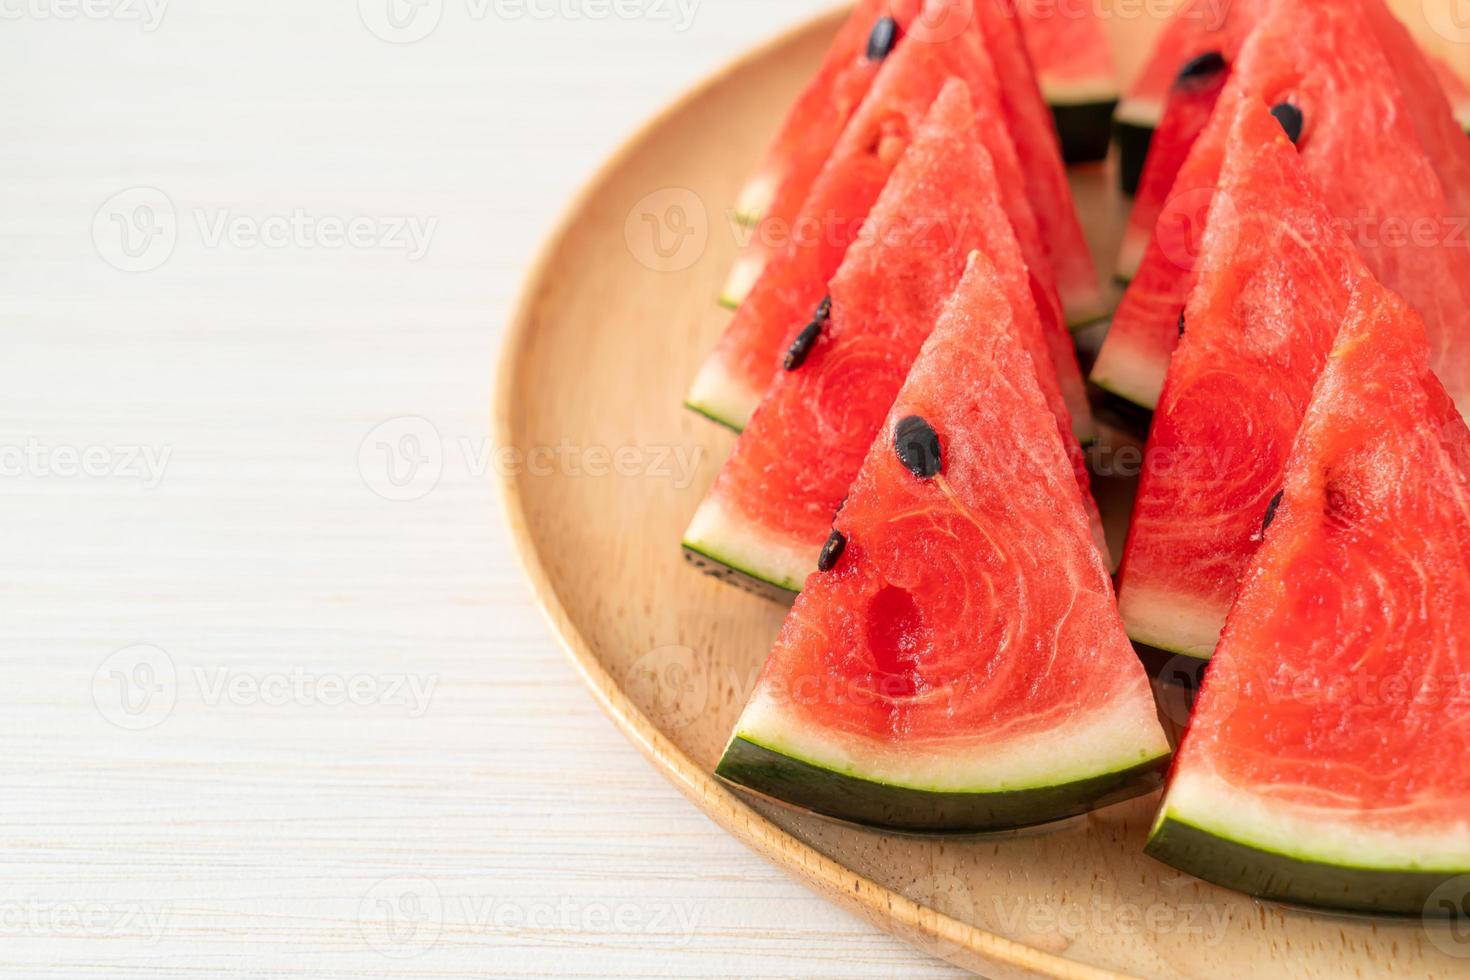 frische Wassermelone auf Teller geschnitten foto